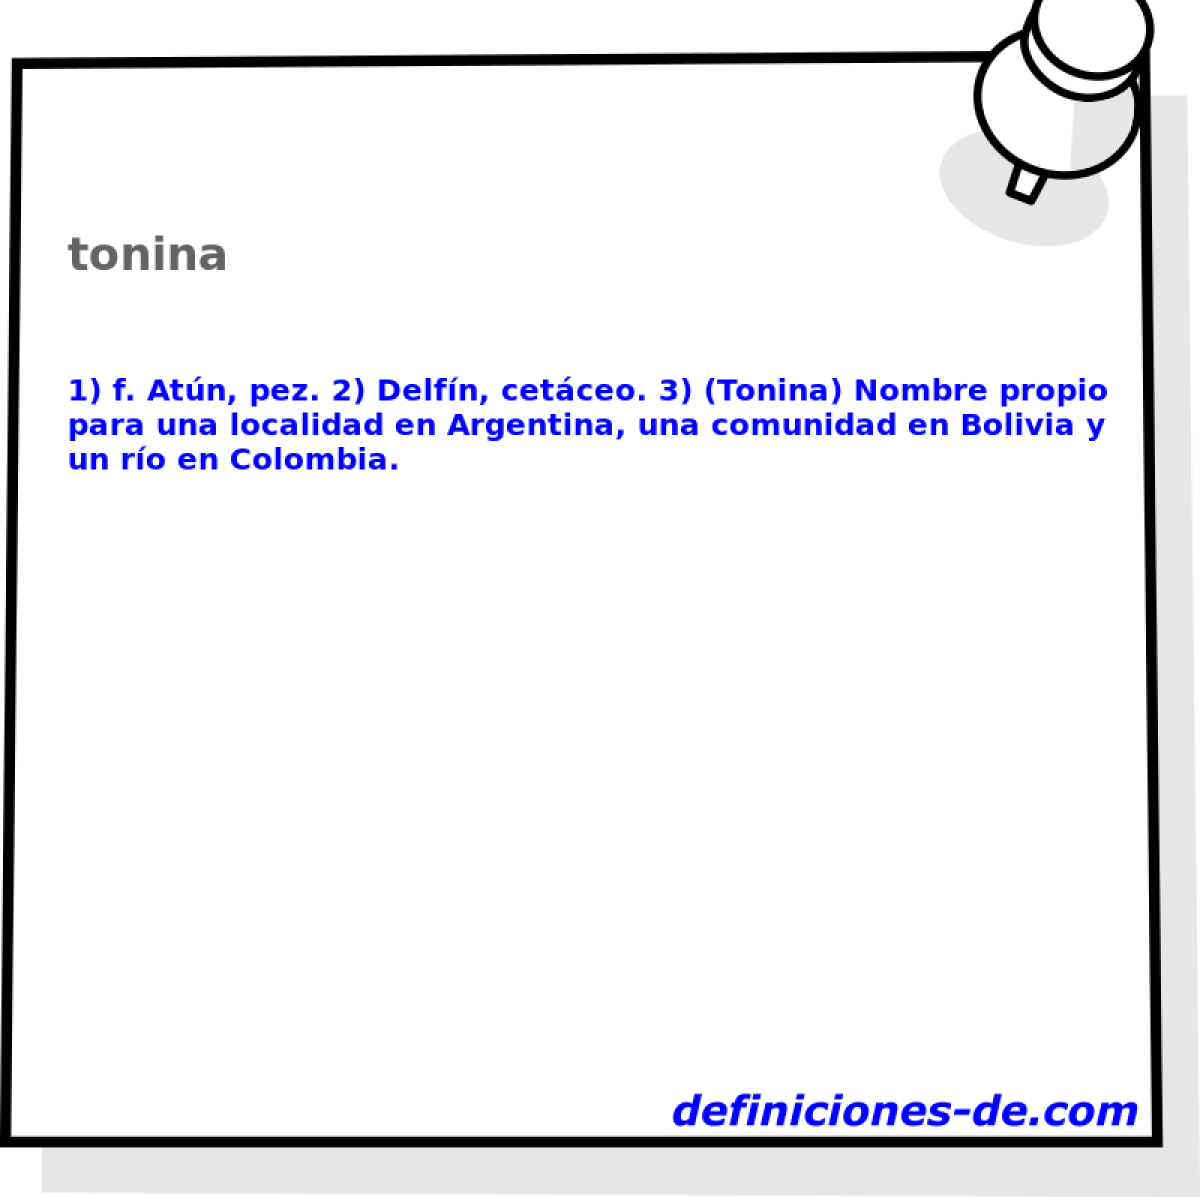 tonina 